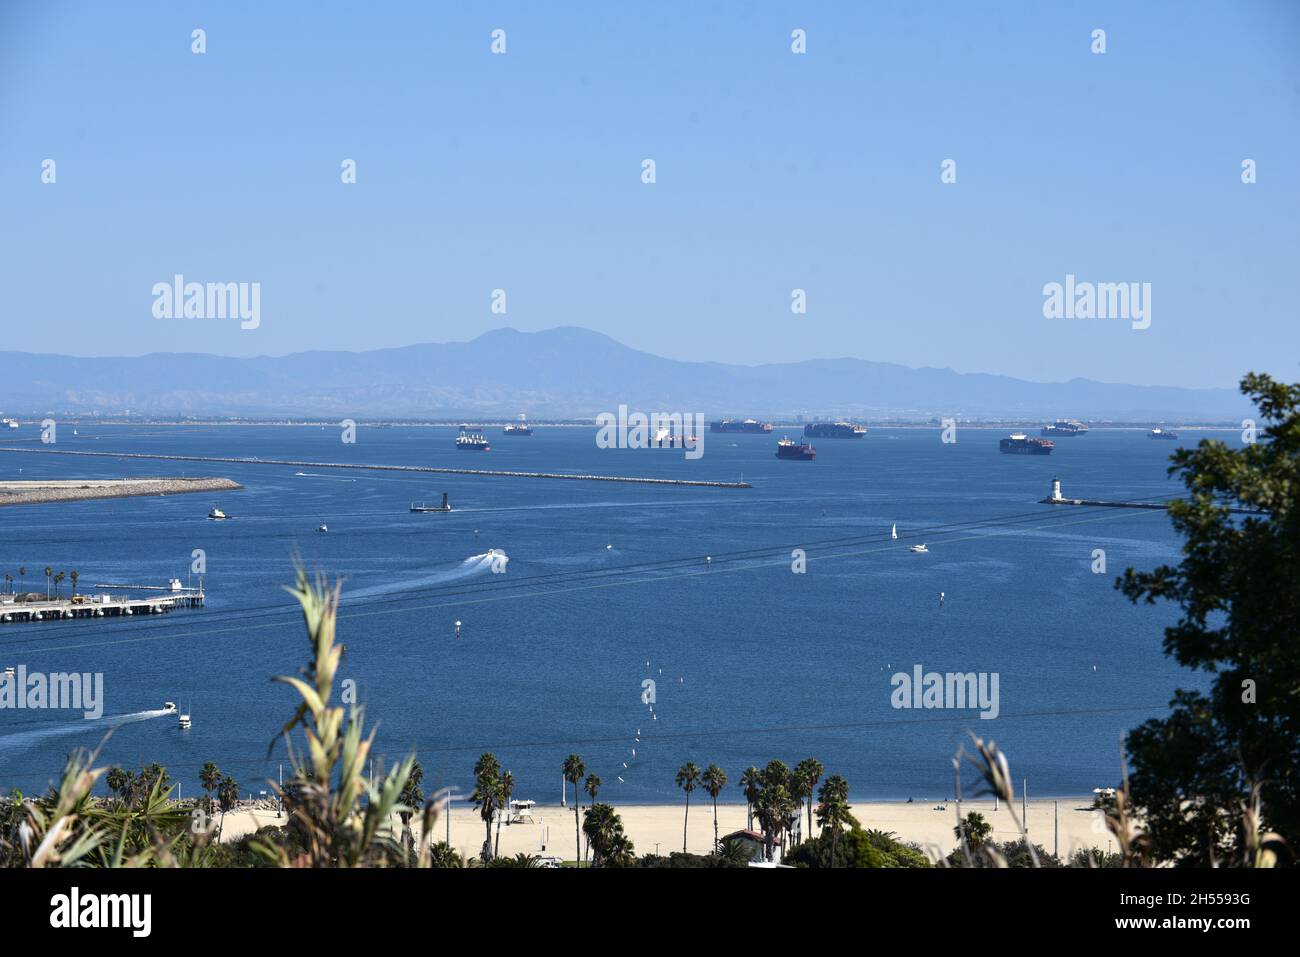 Los Angeles, CA USA - 16 luglio 2021: Dozzine di navi portacontainer in attesa oltre la frangiflutti in mare per scaricare al porto di Los Angeles e Long Beac Foto Stock